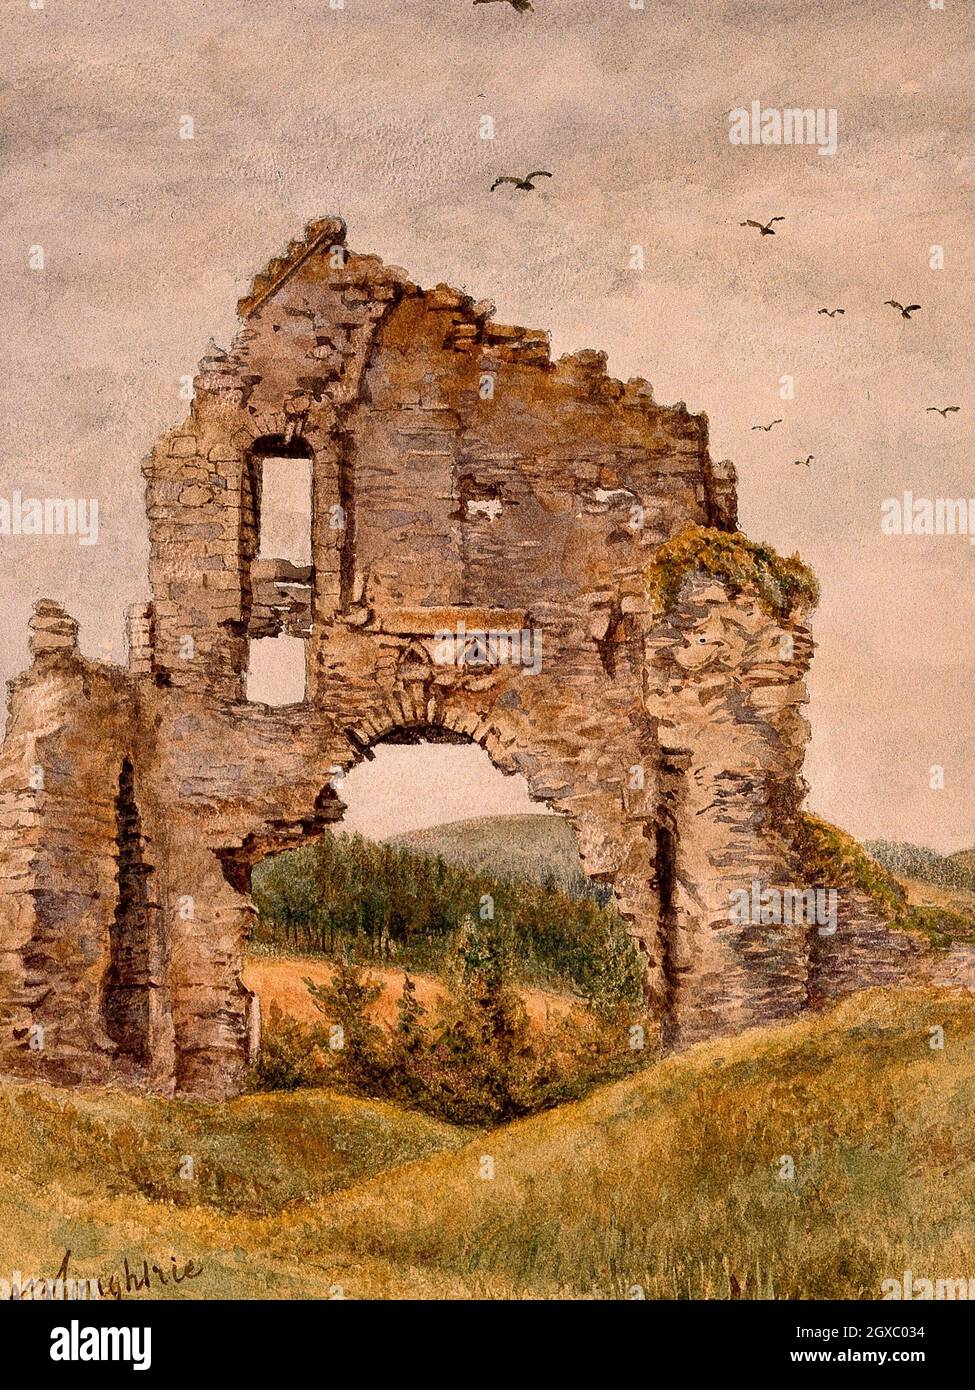 Ruinas del Castillo de Kildruming, Aberdeenshire, la residencia de Sir Patrick Manson. Acuarela de J.B. Coughtrie, ca. 1890. - Foto de stock